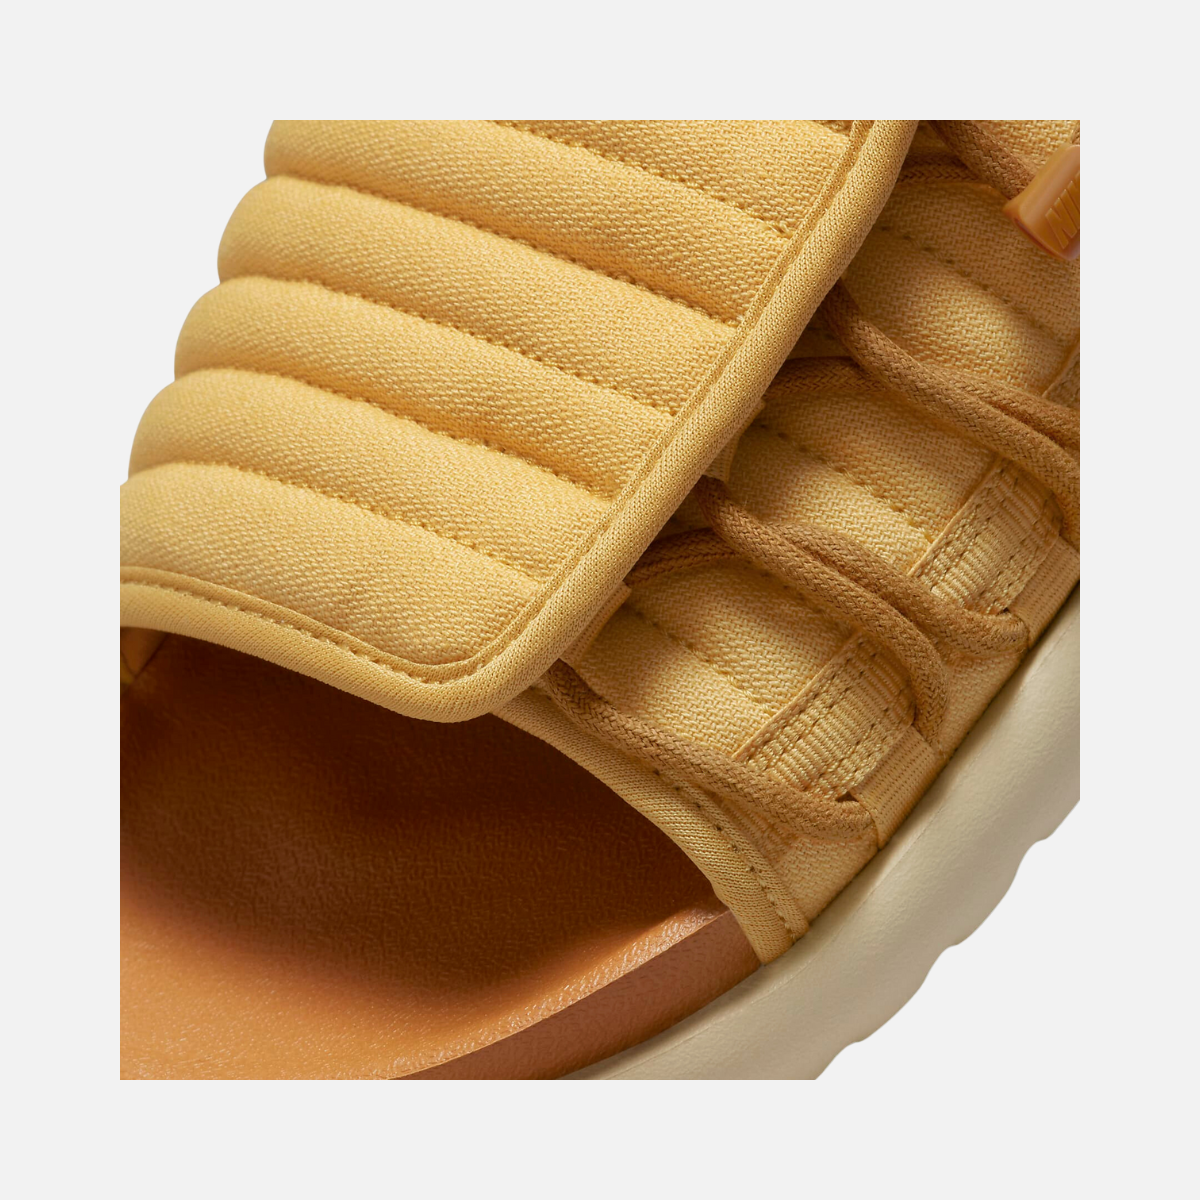 Nike Asuna 2 Men's Slides -Wheat Gold/Desert Ochre/Team Gold